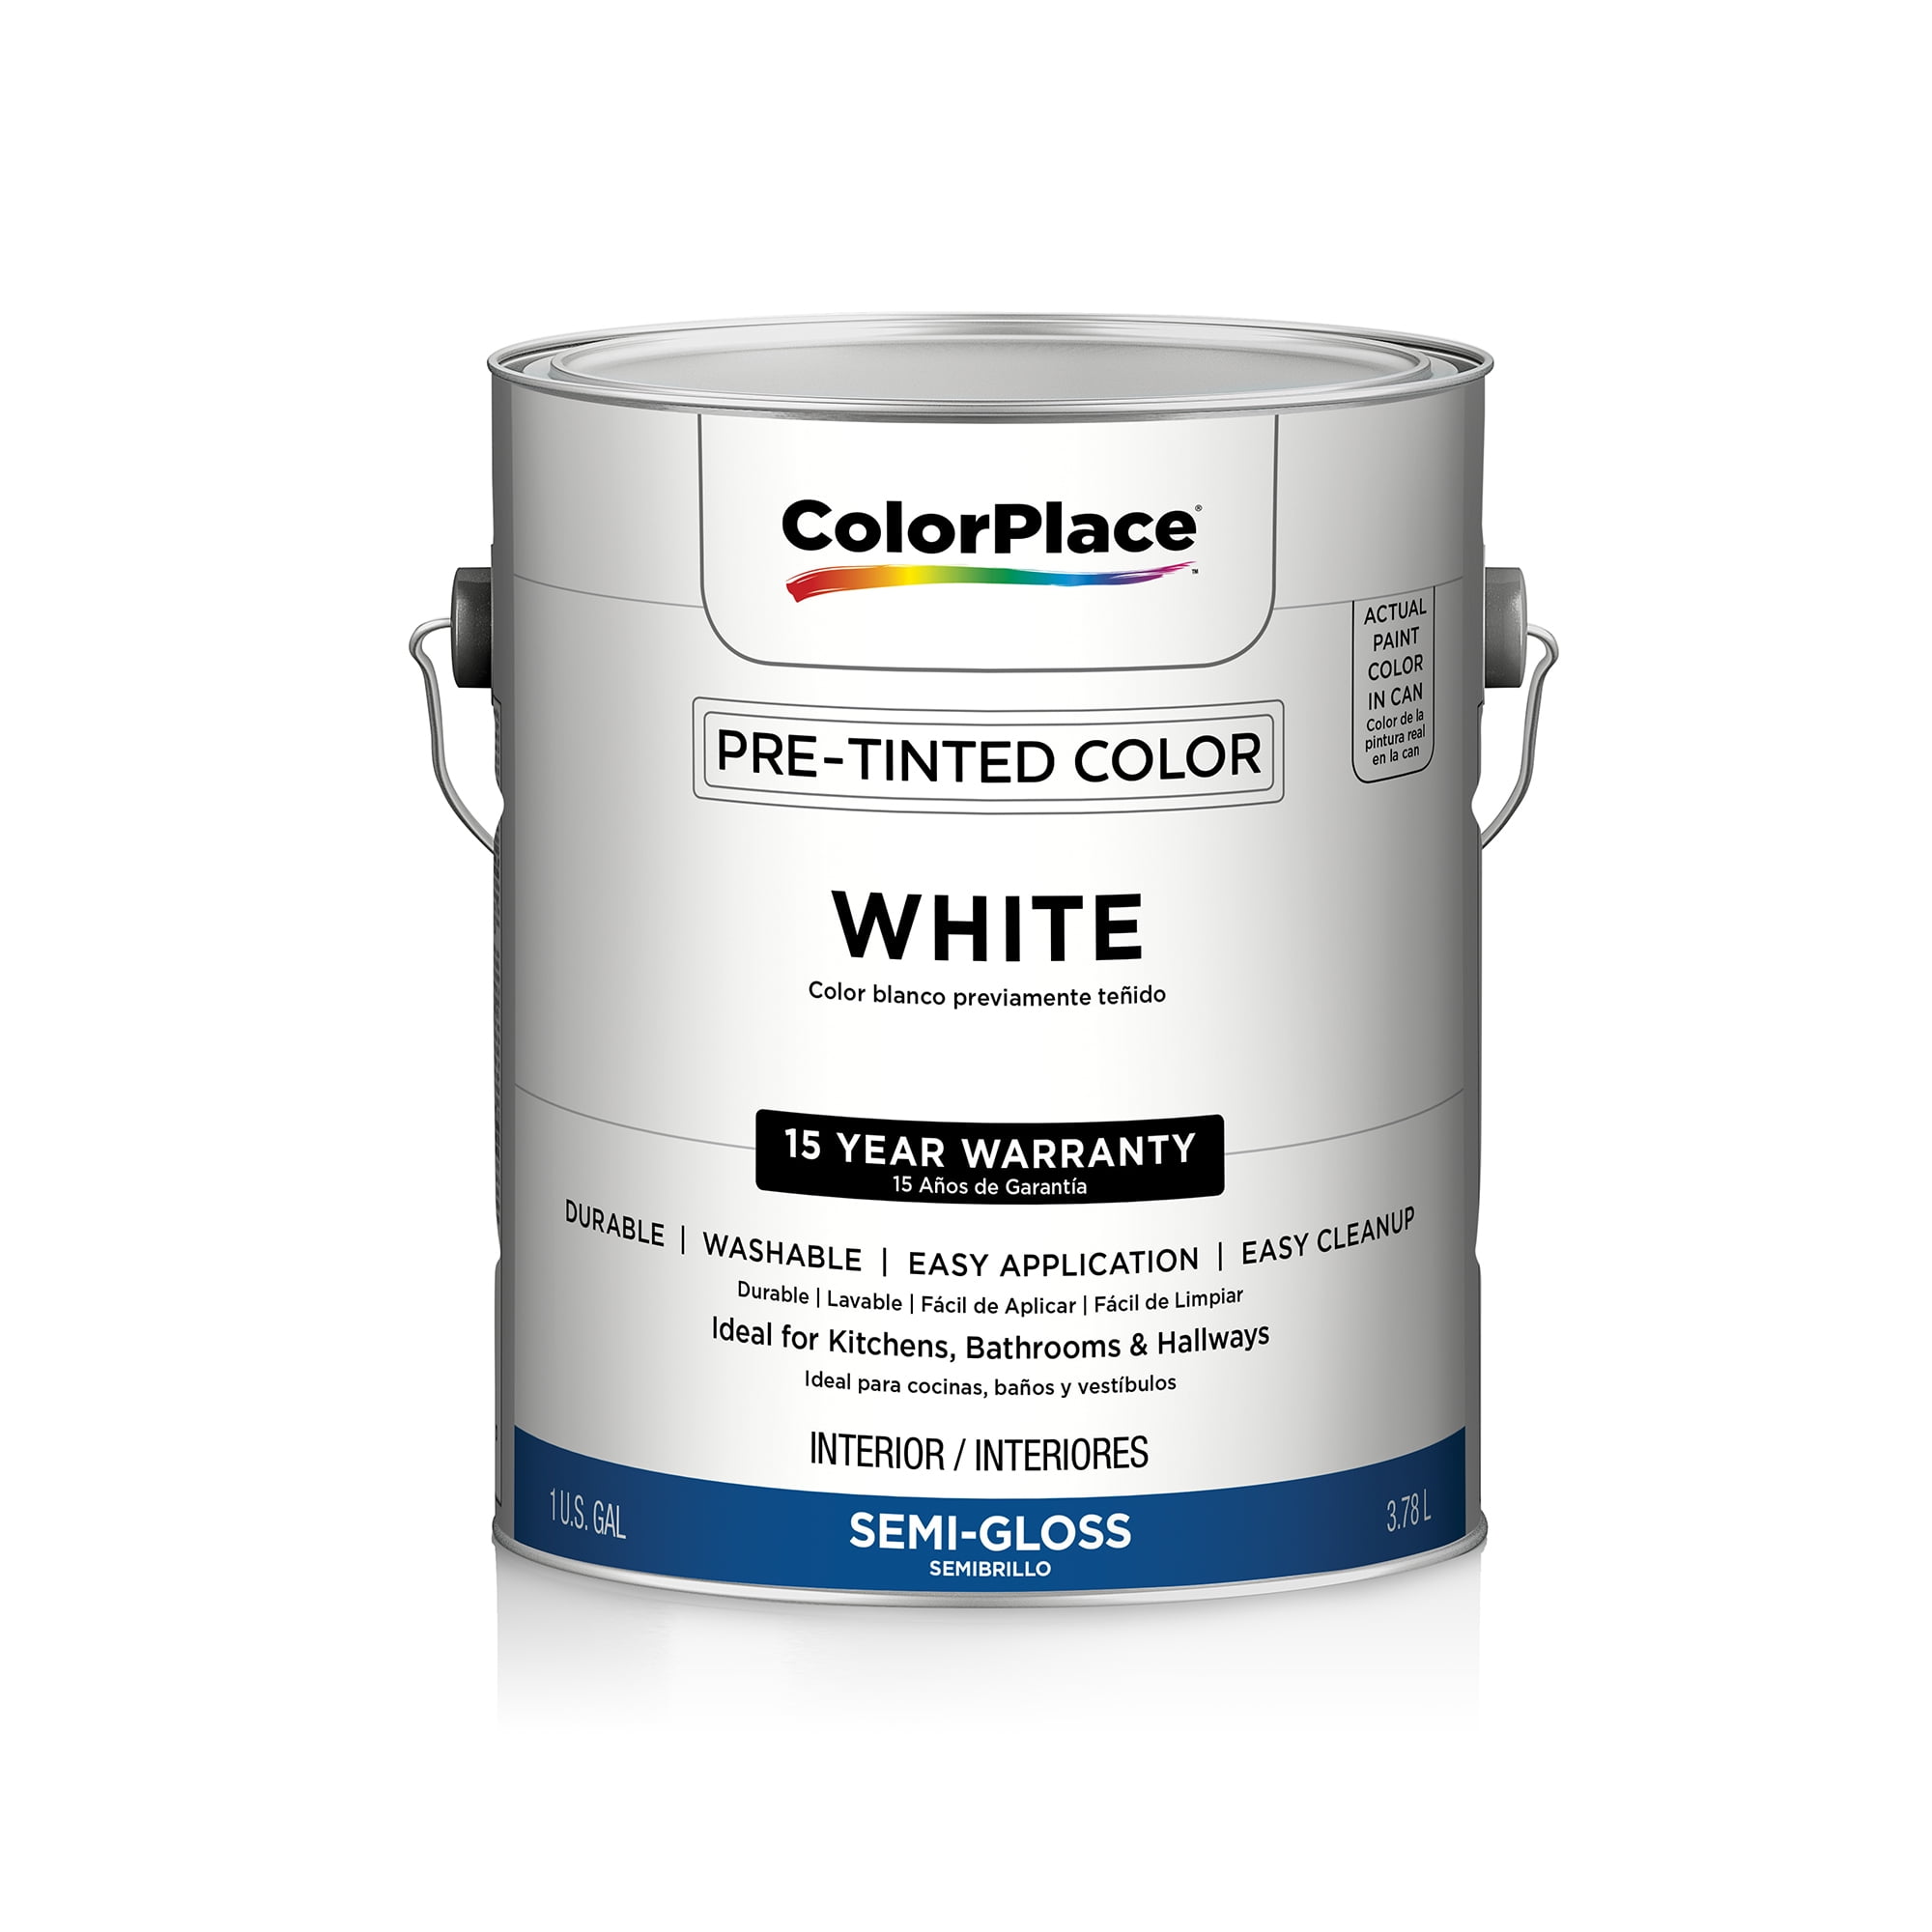 Walmart Colorplace Paint Color Chart